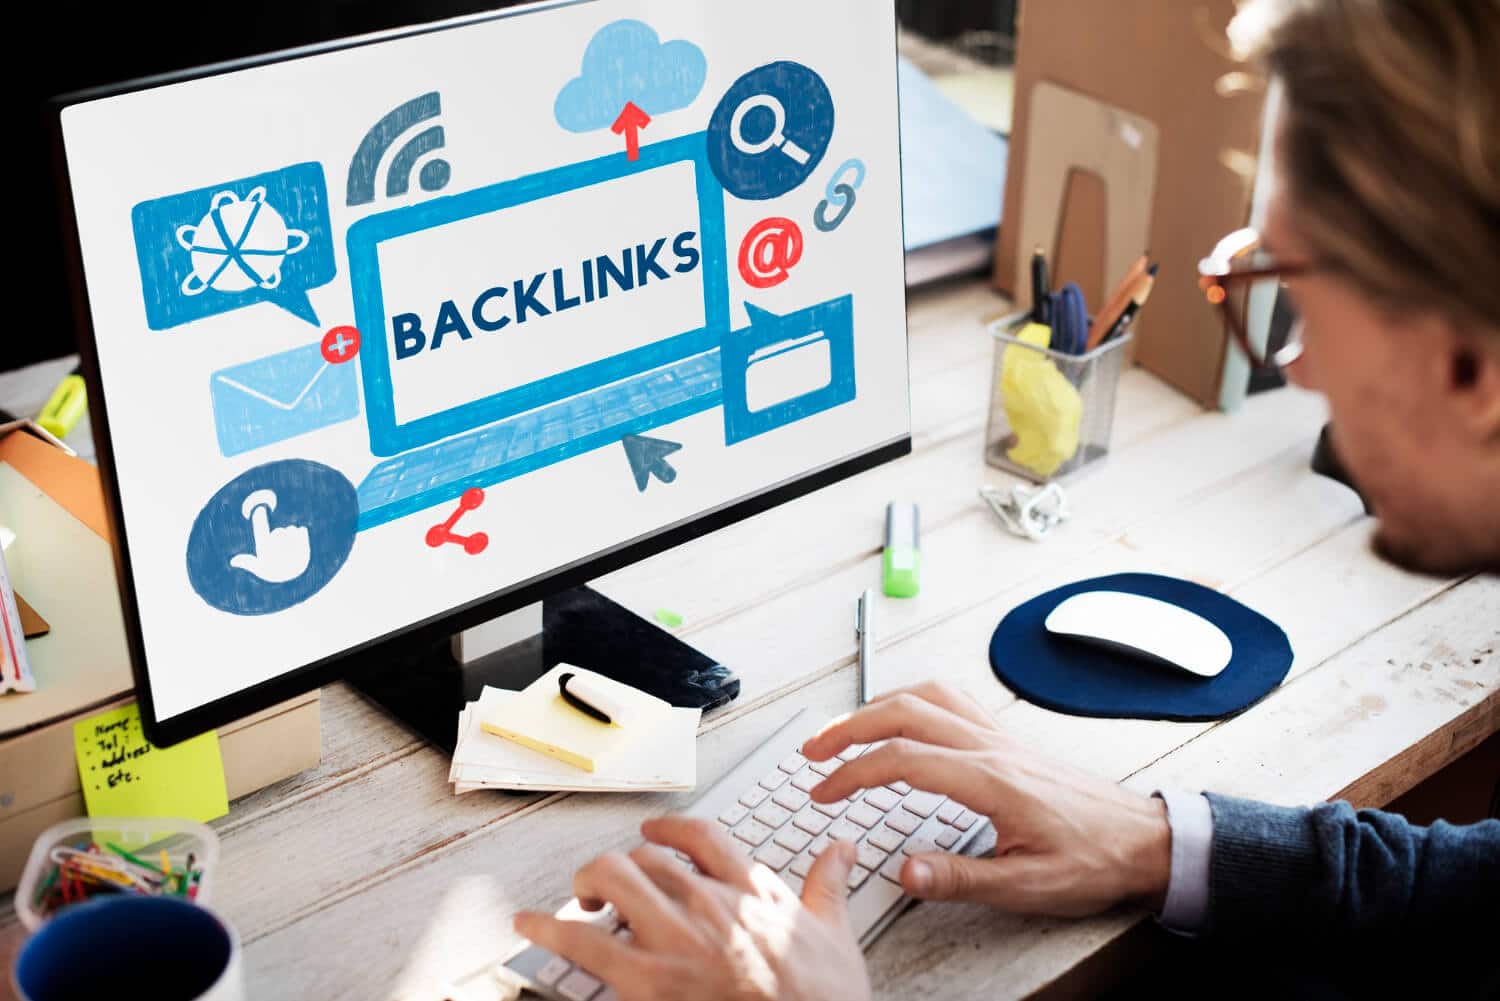 Quais as vantagens da utilização de backlinks na sua estratégia digital?